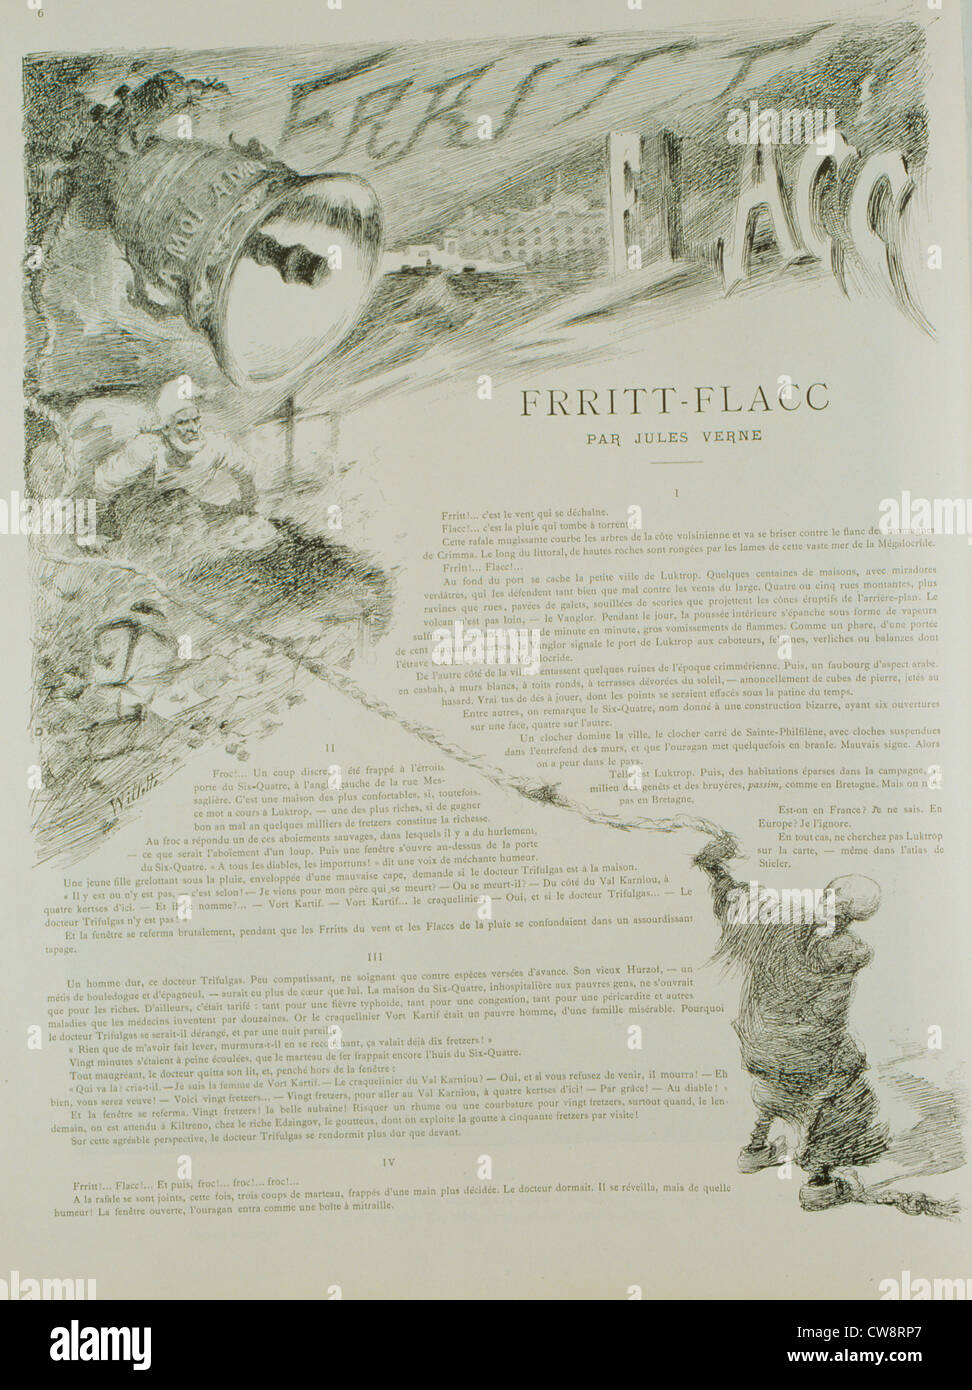 Frritt-Flacc short story Jules Verne illustration Willette Stock Photo -  Alamy